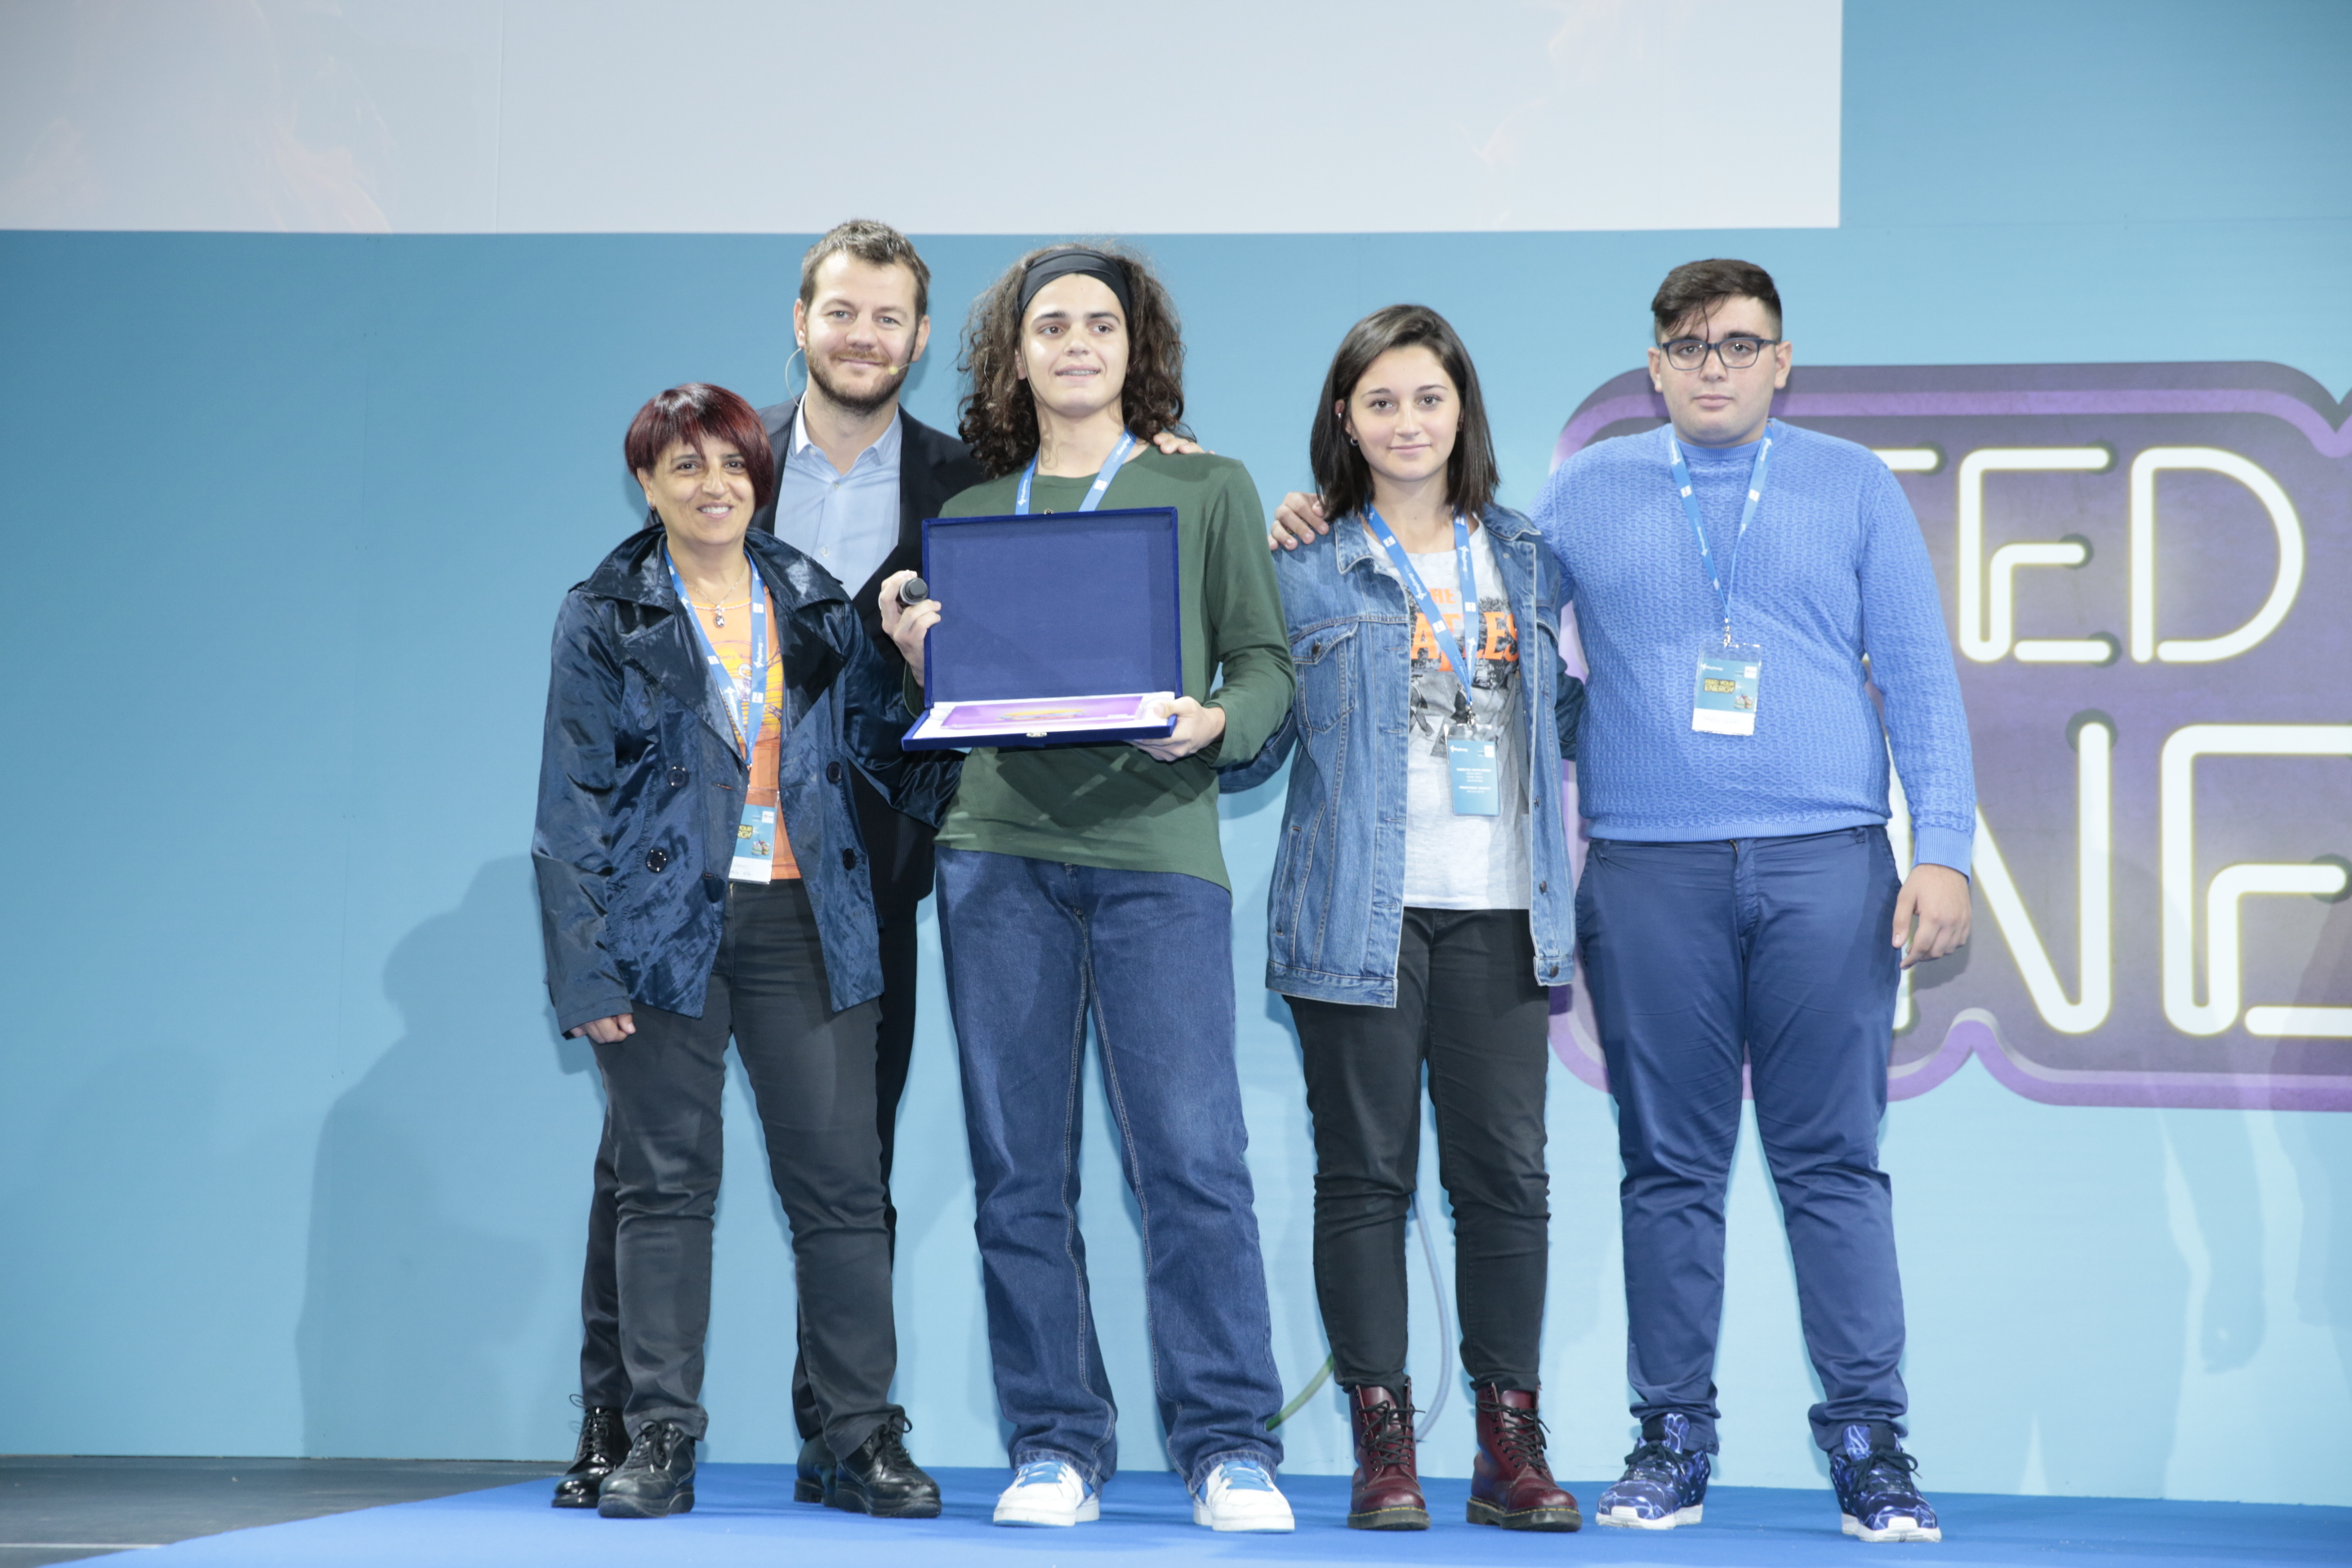  Concorso PlayEnergy, premiata la scuola “Sandro Pertini” di Napoli